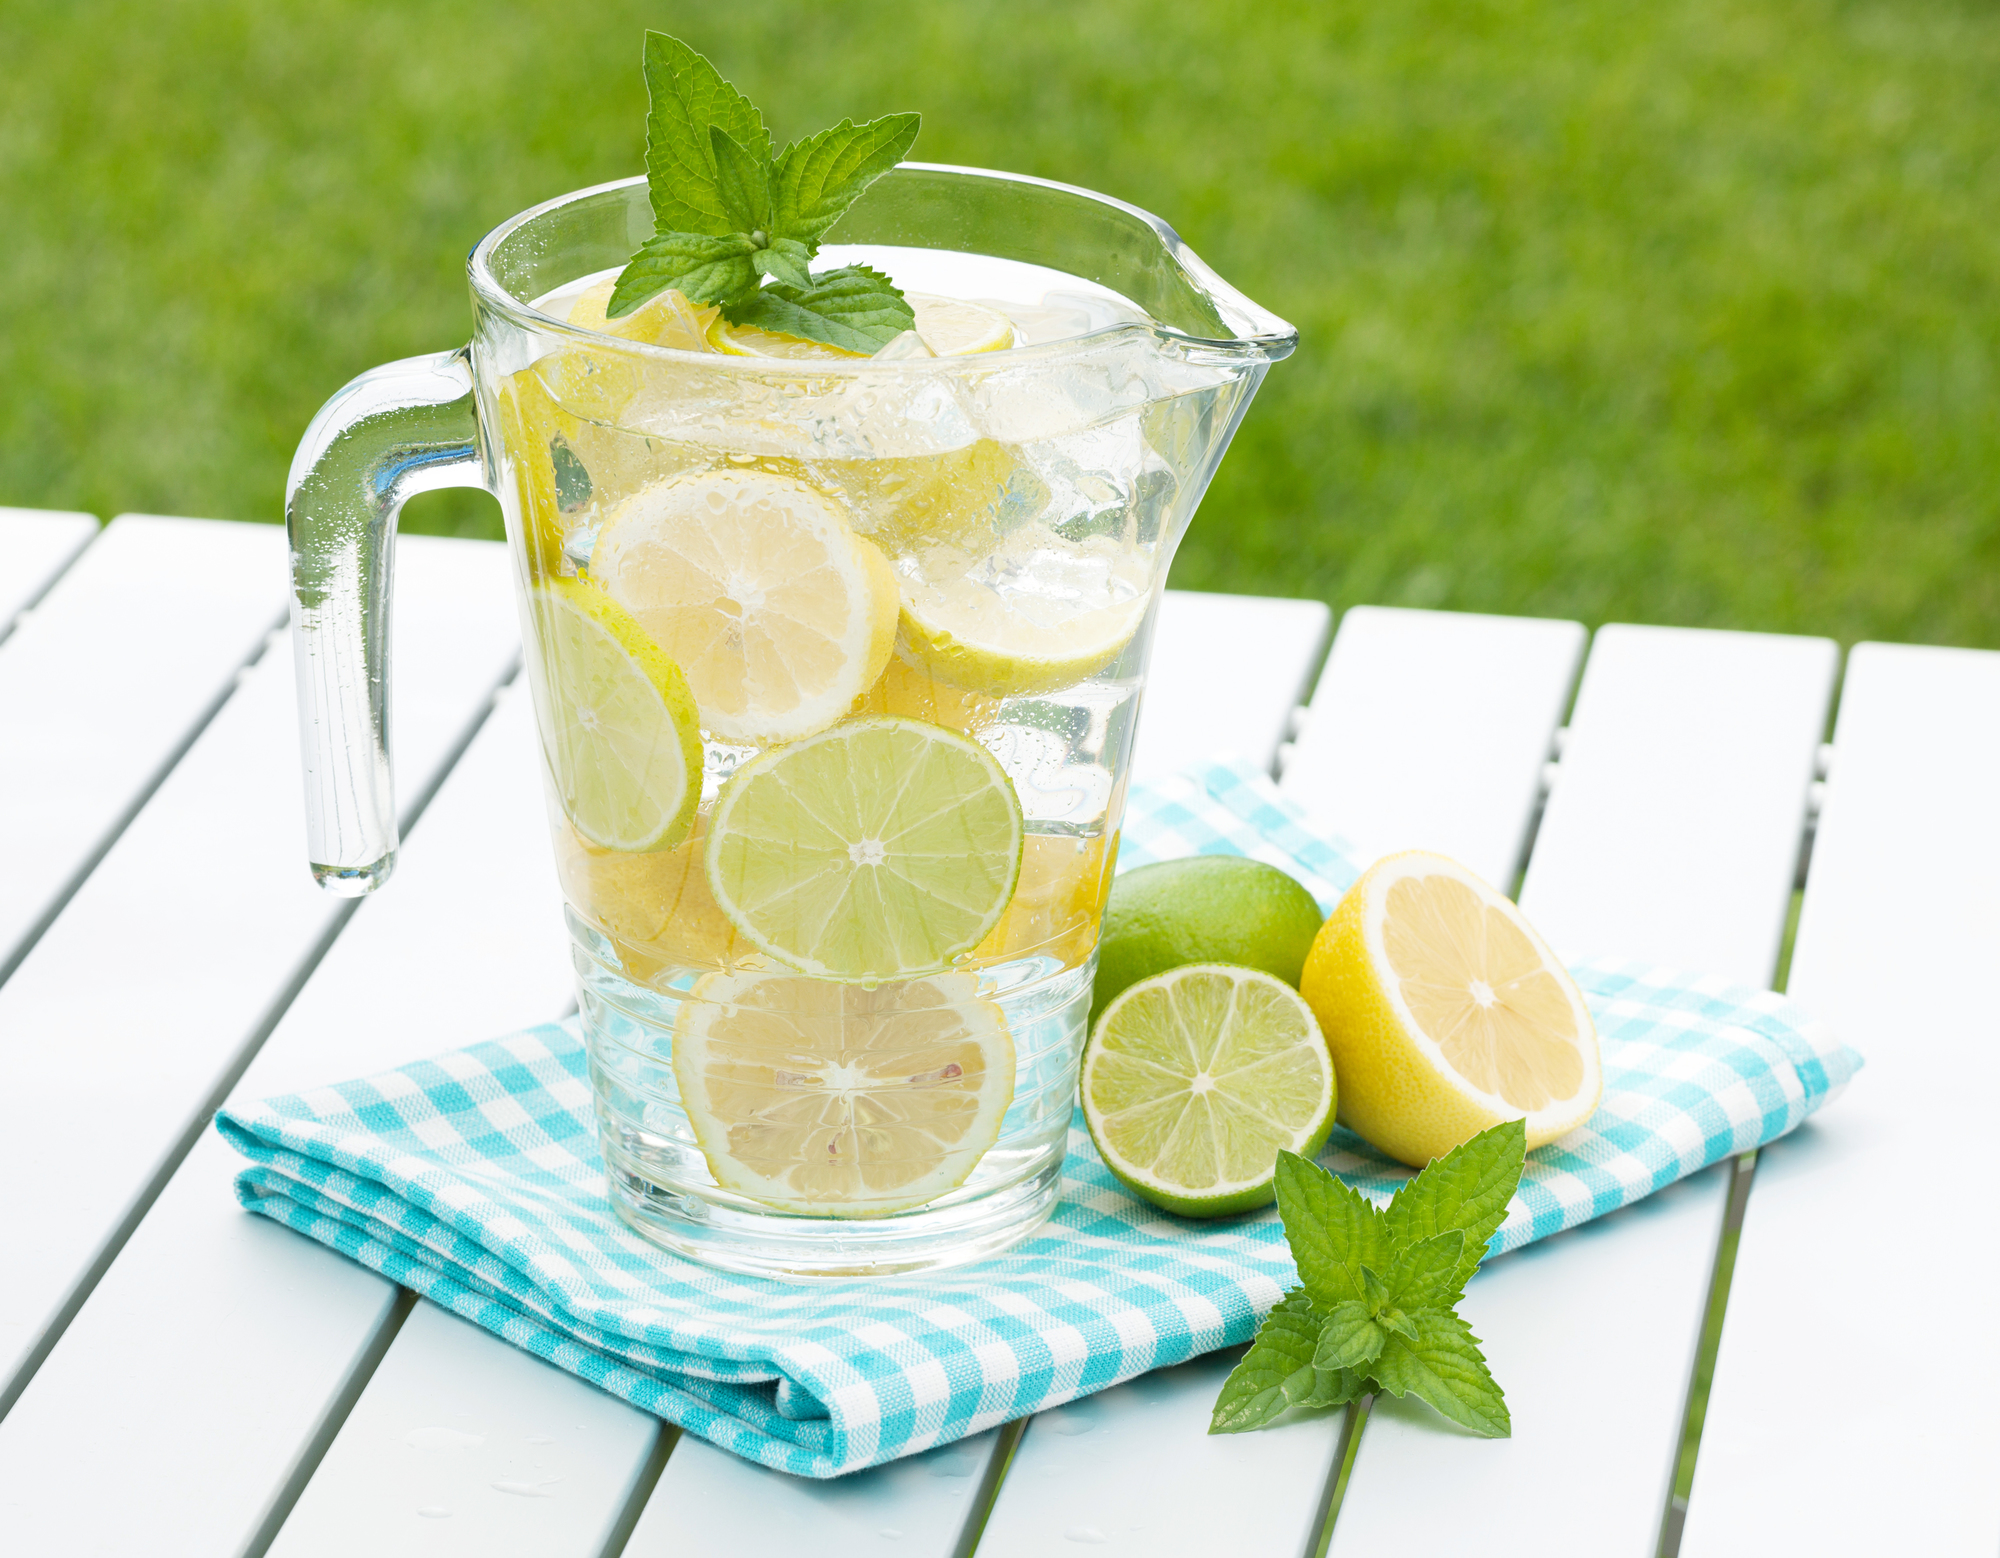 Homemade lemonade with fresh citruses